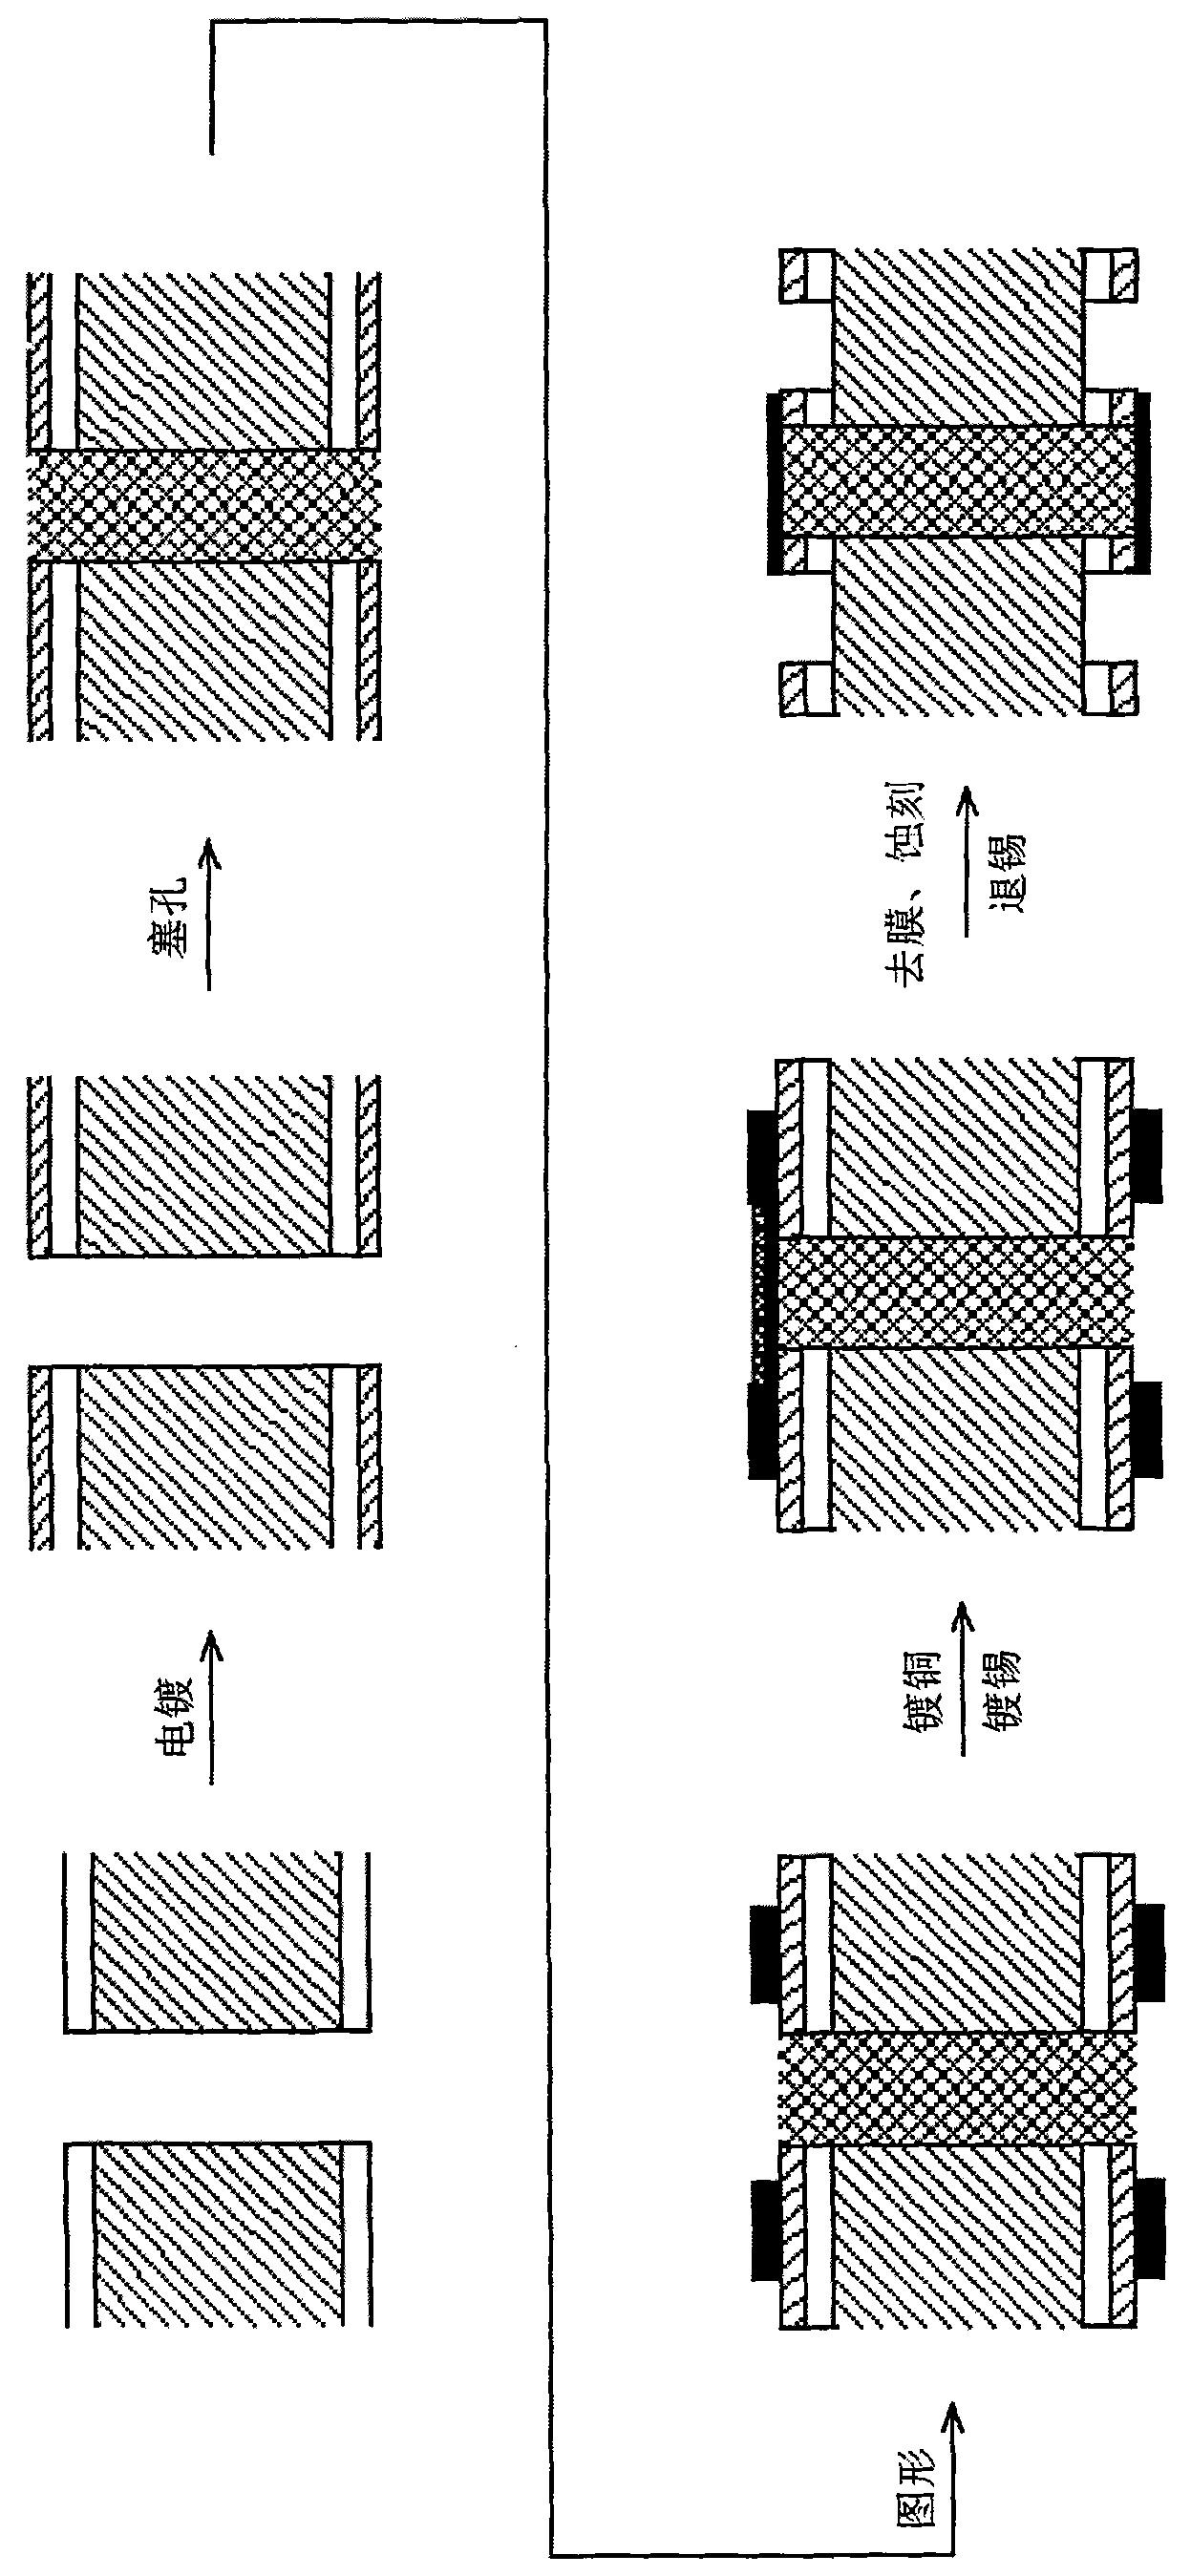 PCB (Printed Circuit Board) processing method